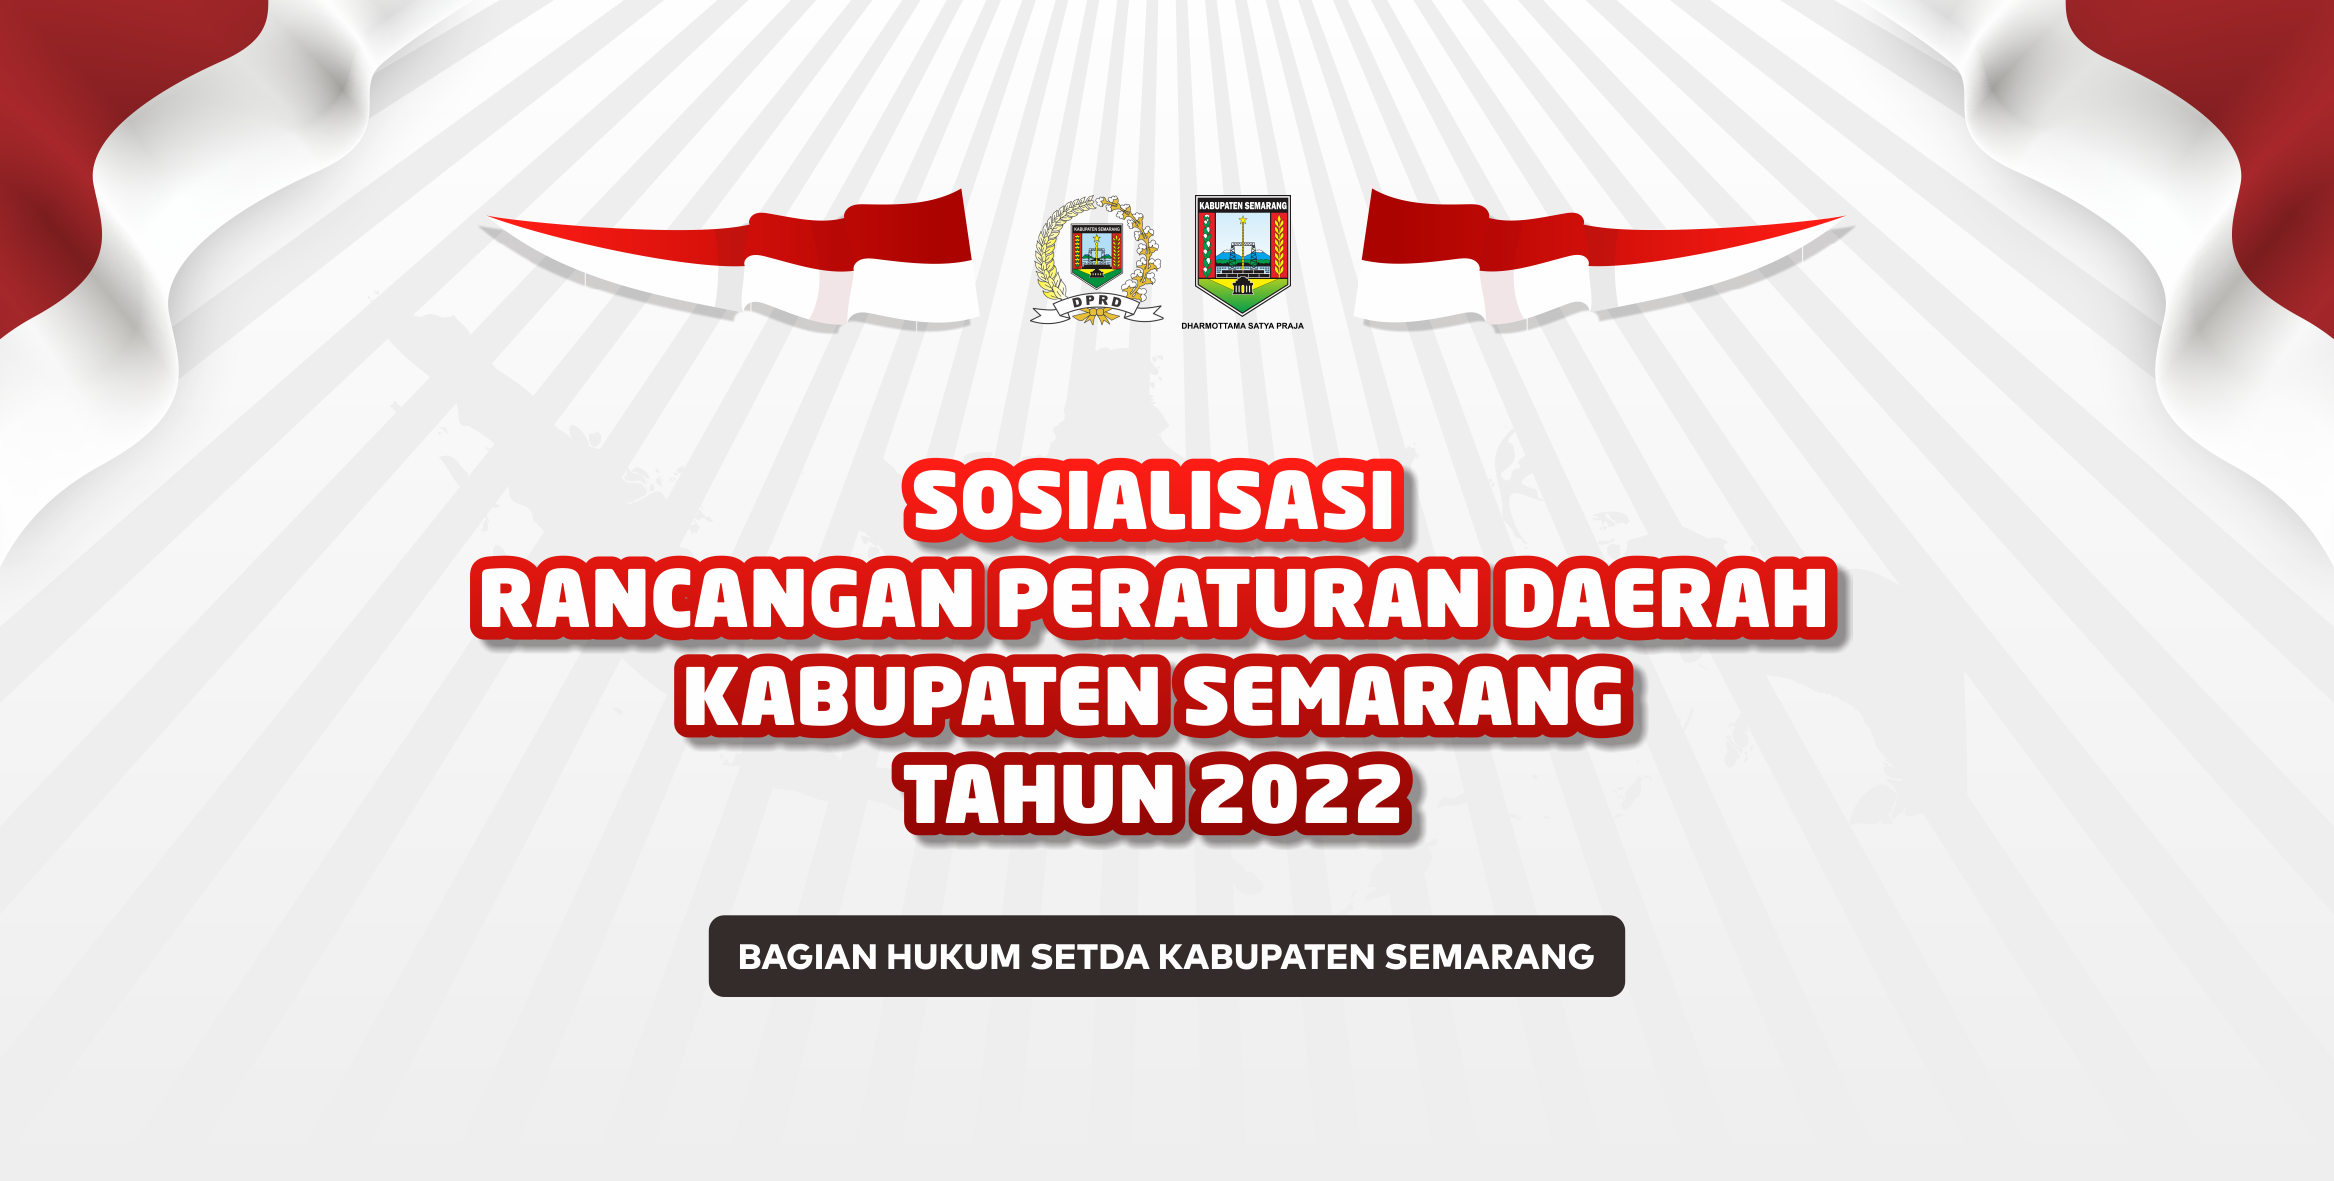 Sosialisasi Raperda Kabupaten Semarang Tahun 2022 Di Kecamatan Bergas, Bawen Dan Ambarawa